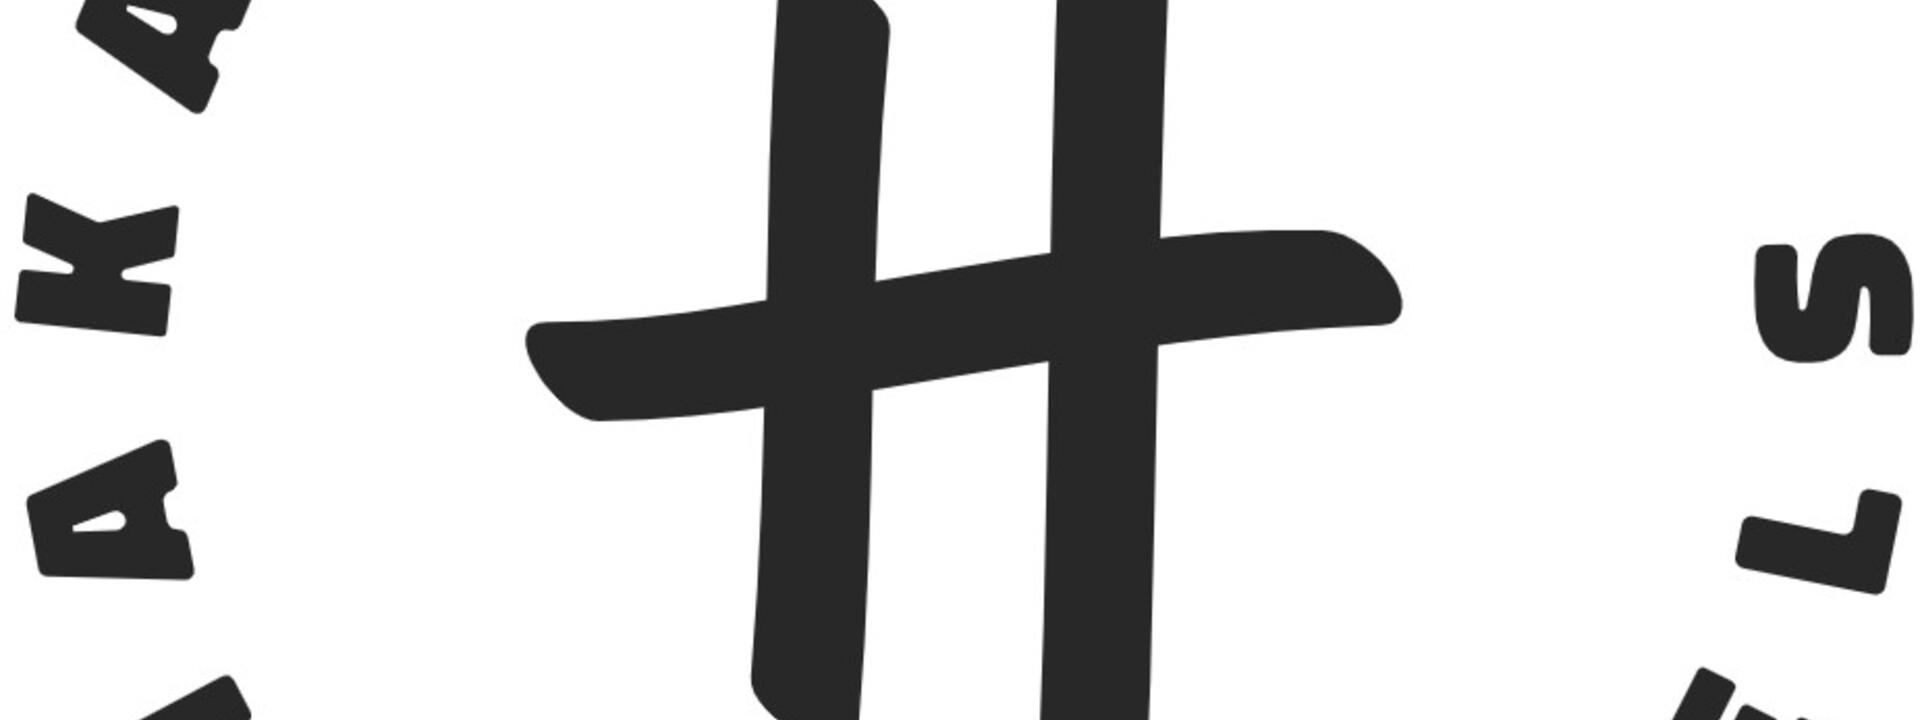 Haka House Logo.jpg